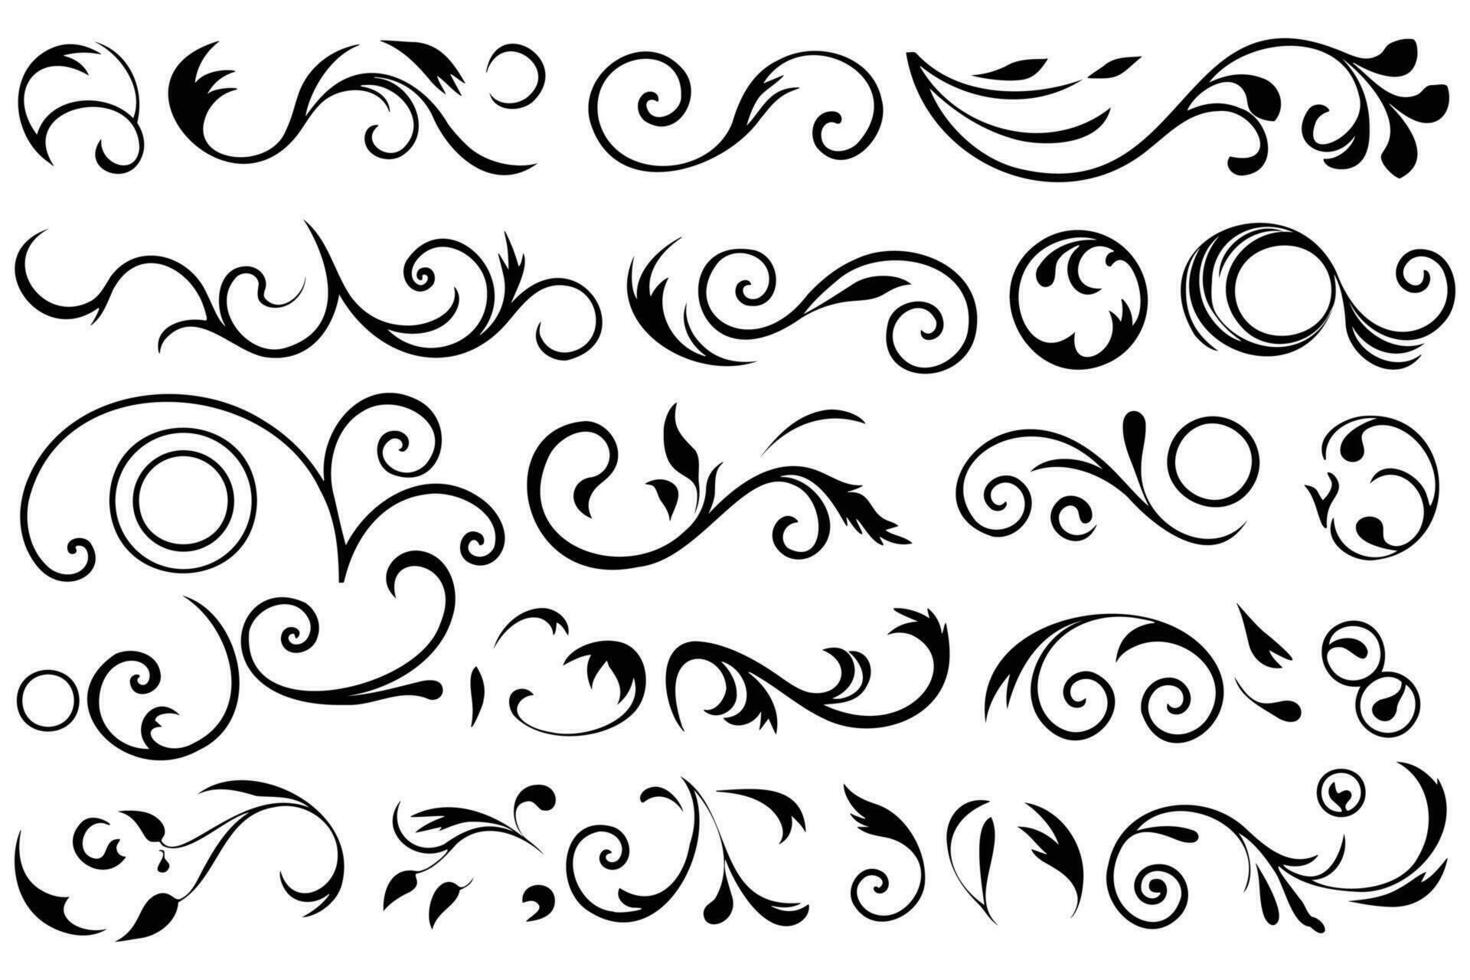 Grafik Eleganz Zier Kalligraphie einstellen mit dekorativ Blumen- Elemente vektor